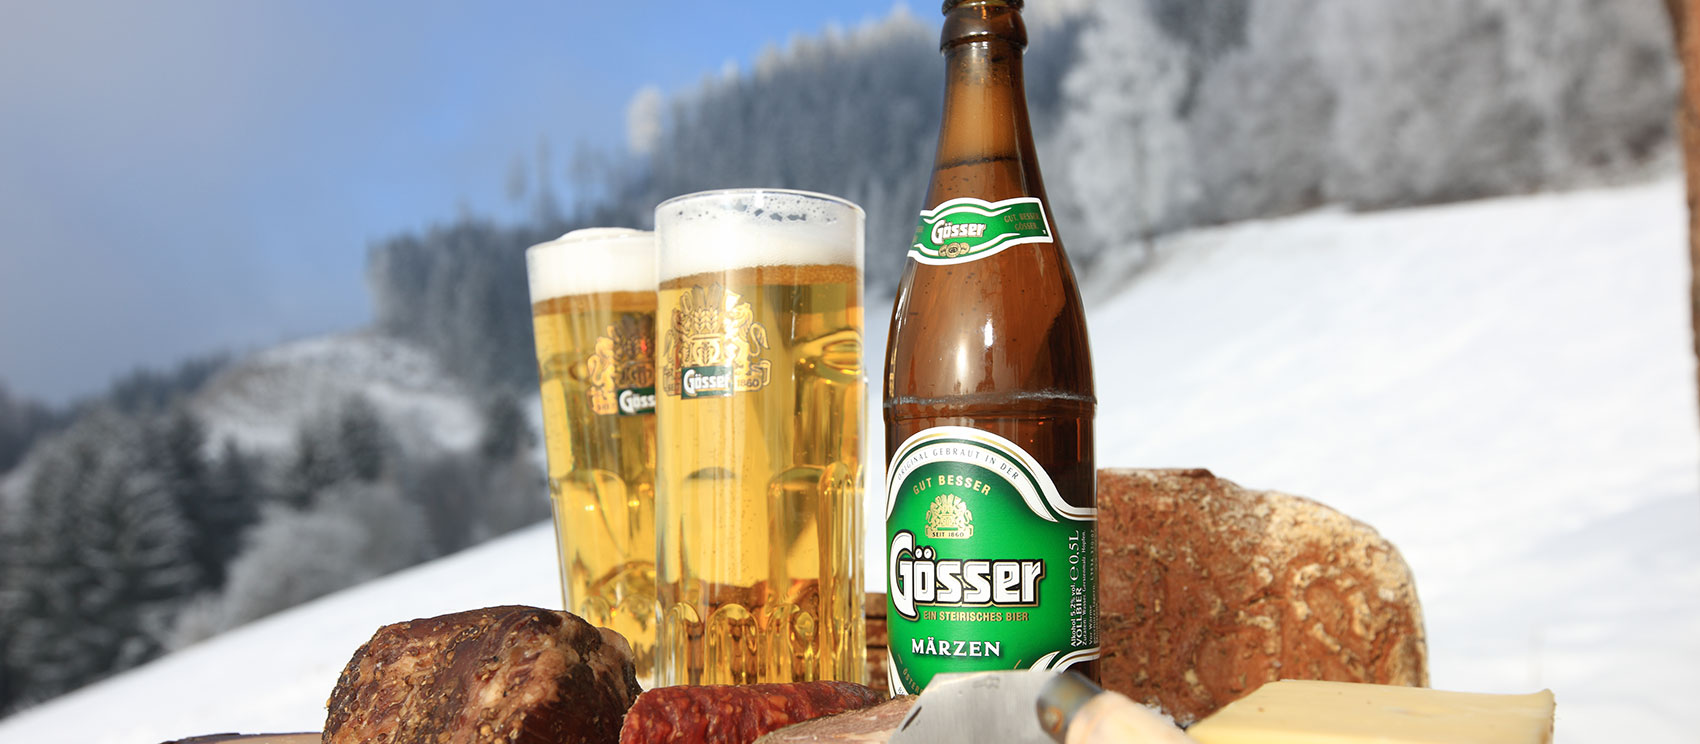 Steirische Jause mit Bier, Brot, Geselchtes und Würste - im Hintergrund Schneelandschaft